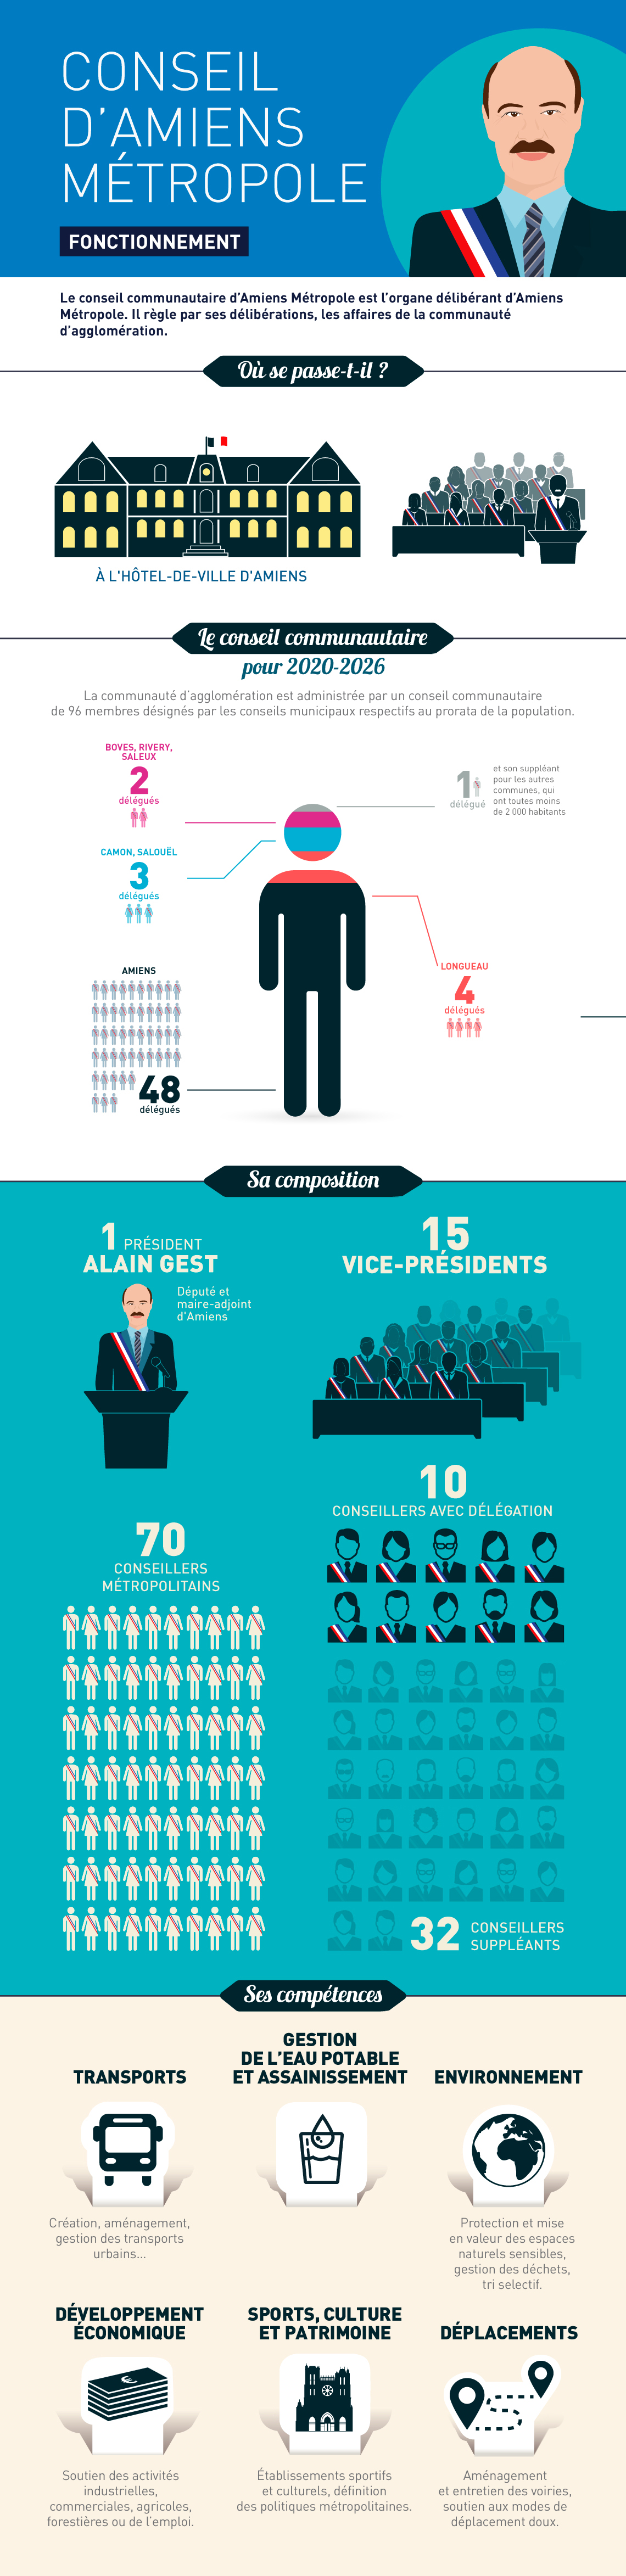 INFOGRAPHIE - chiffres clés du conseil d'Amiens Métropole © Graphic opera